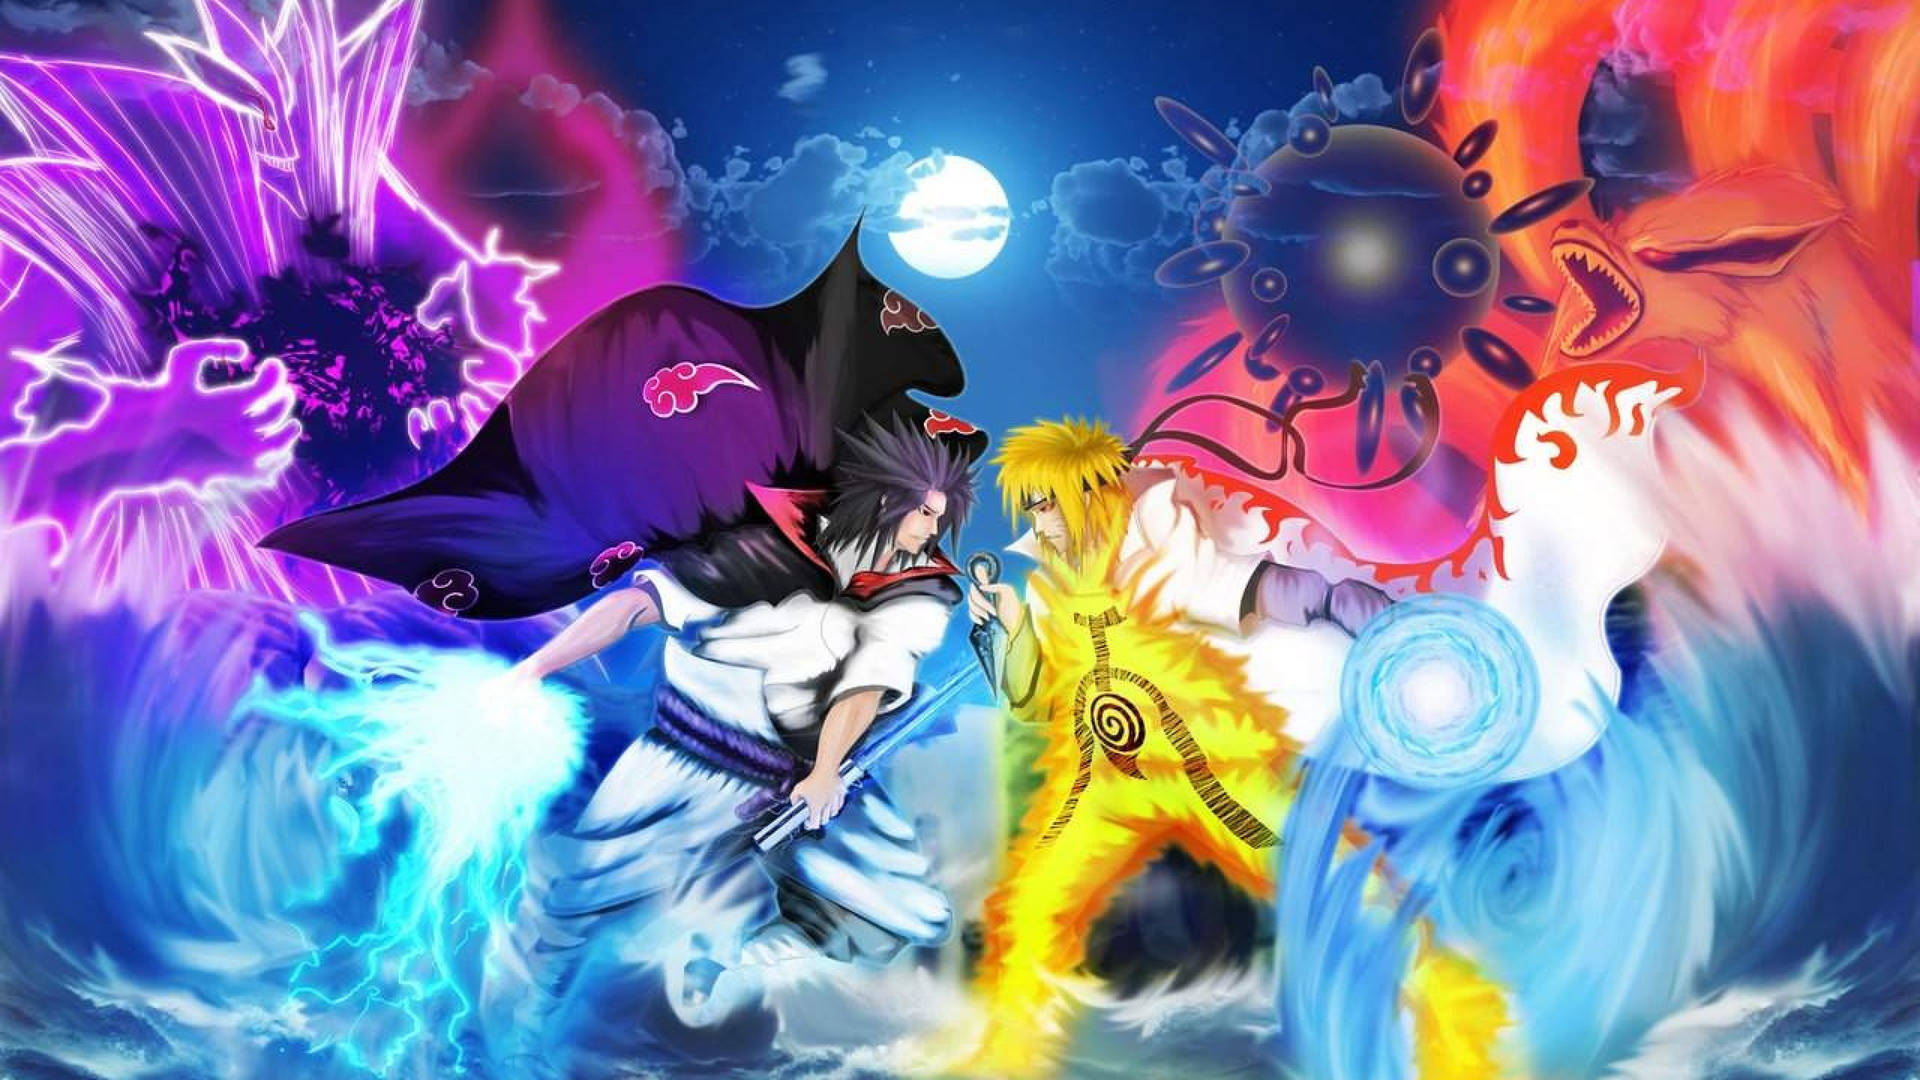 Sasuke Vs Naruto: Hai anh hùng vĩ đại đã cùng nhau trải qua rất nhiều cuộc phiêu lưu và khó khăn. Nhưng cuối cùng, ai sẽ thắng? Đến với chúng tôi để xem những cuộc chiến nảy lửa giữa Sasuke và Naruto, đầy kịch tính và bất ngờ. Sẽ không thể tin được nếu như không chứng kiến cuộc chiến này đấy!